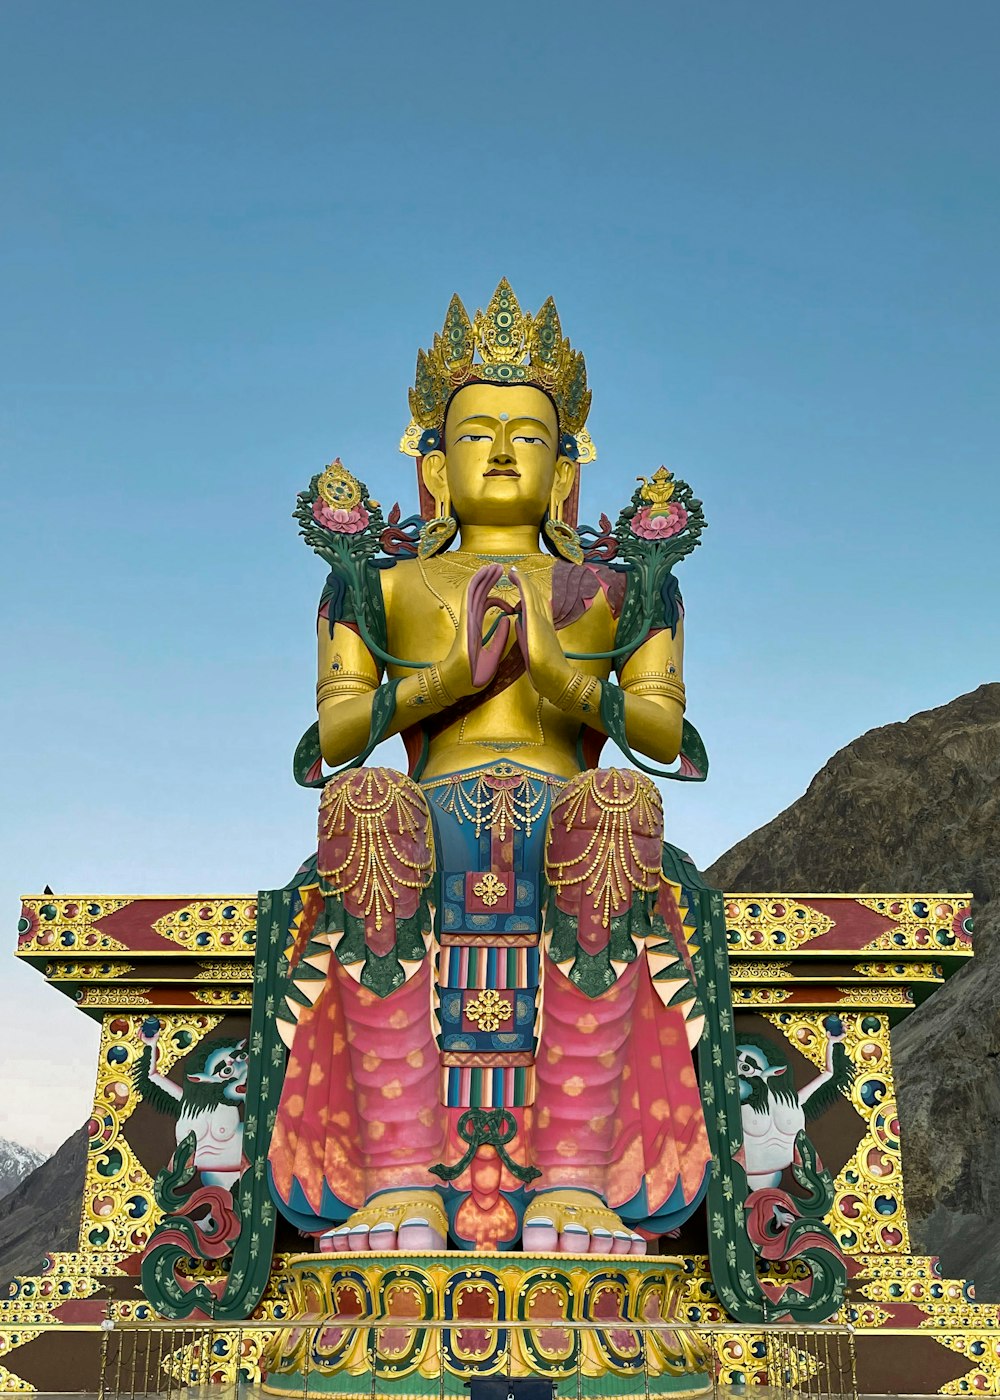 gold hindu deity statue under blue sky during daytime